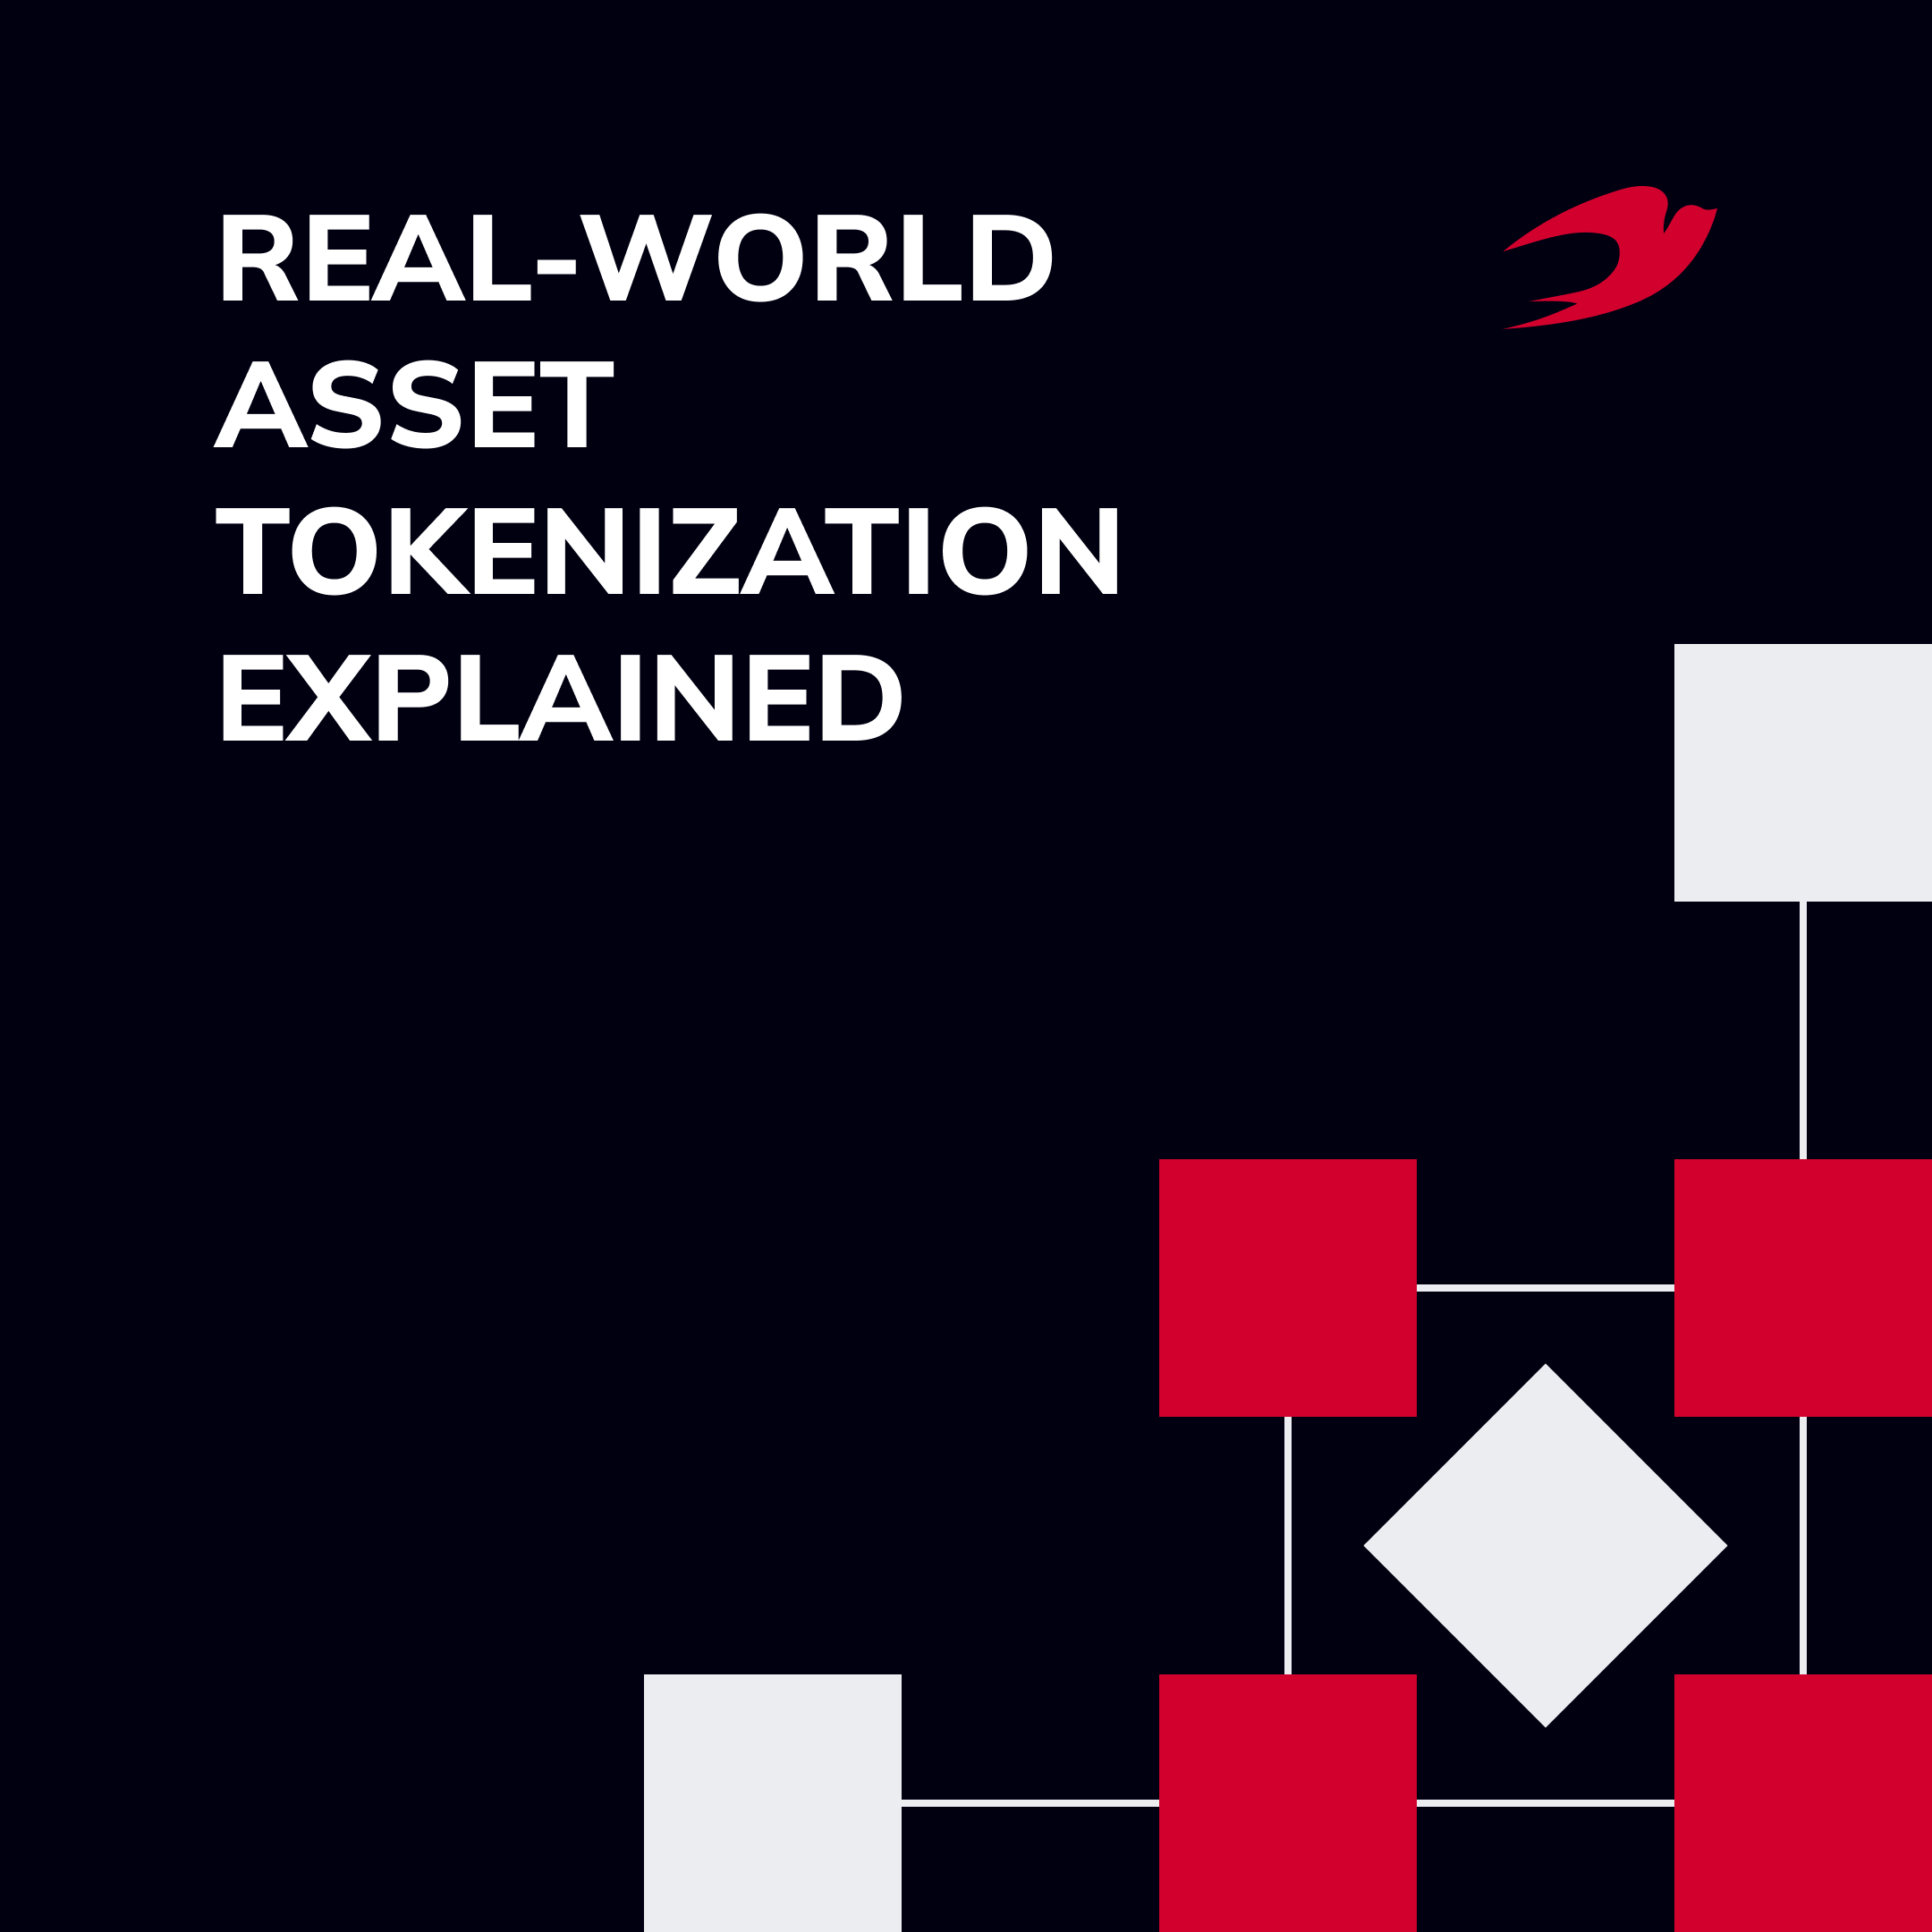 Real-World Asset (RWA) Tokenization